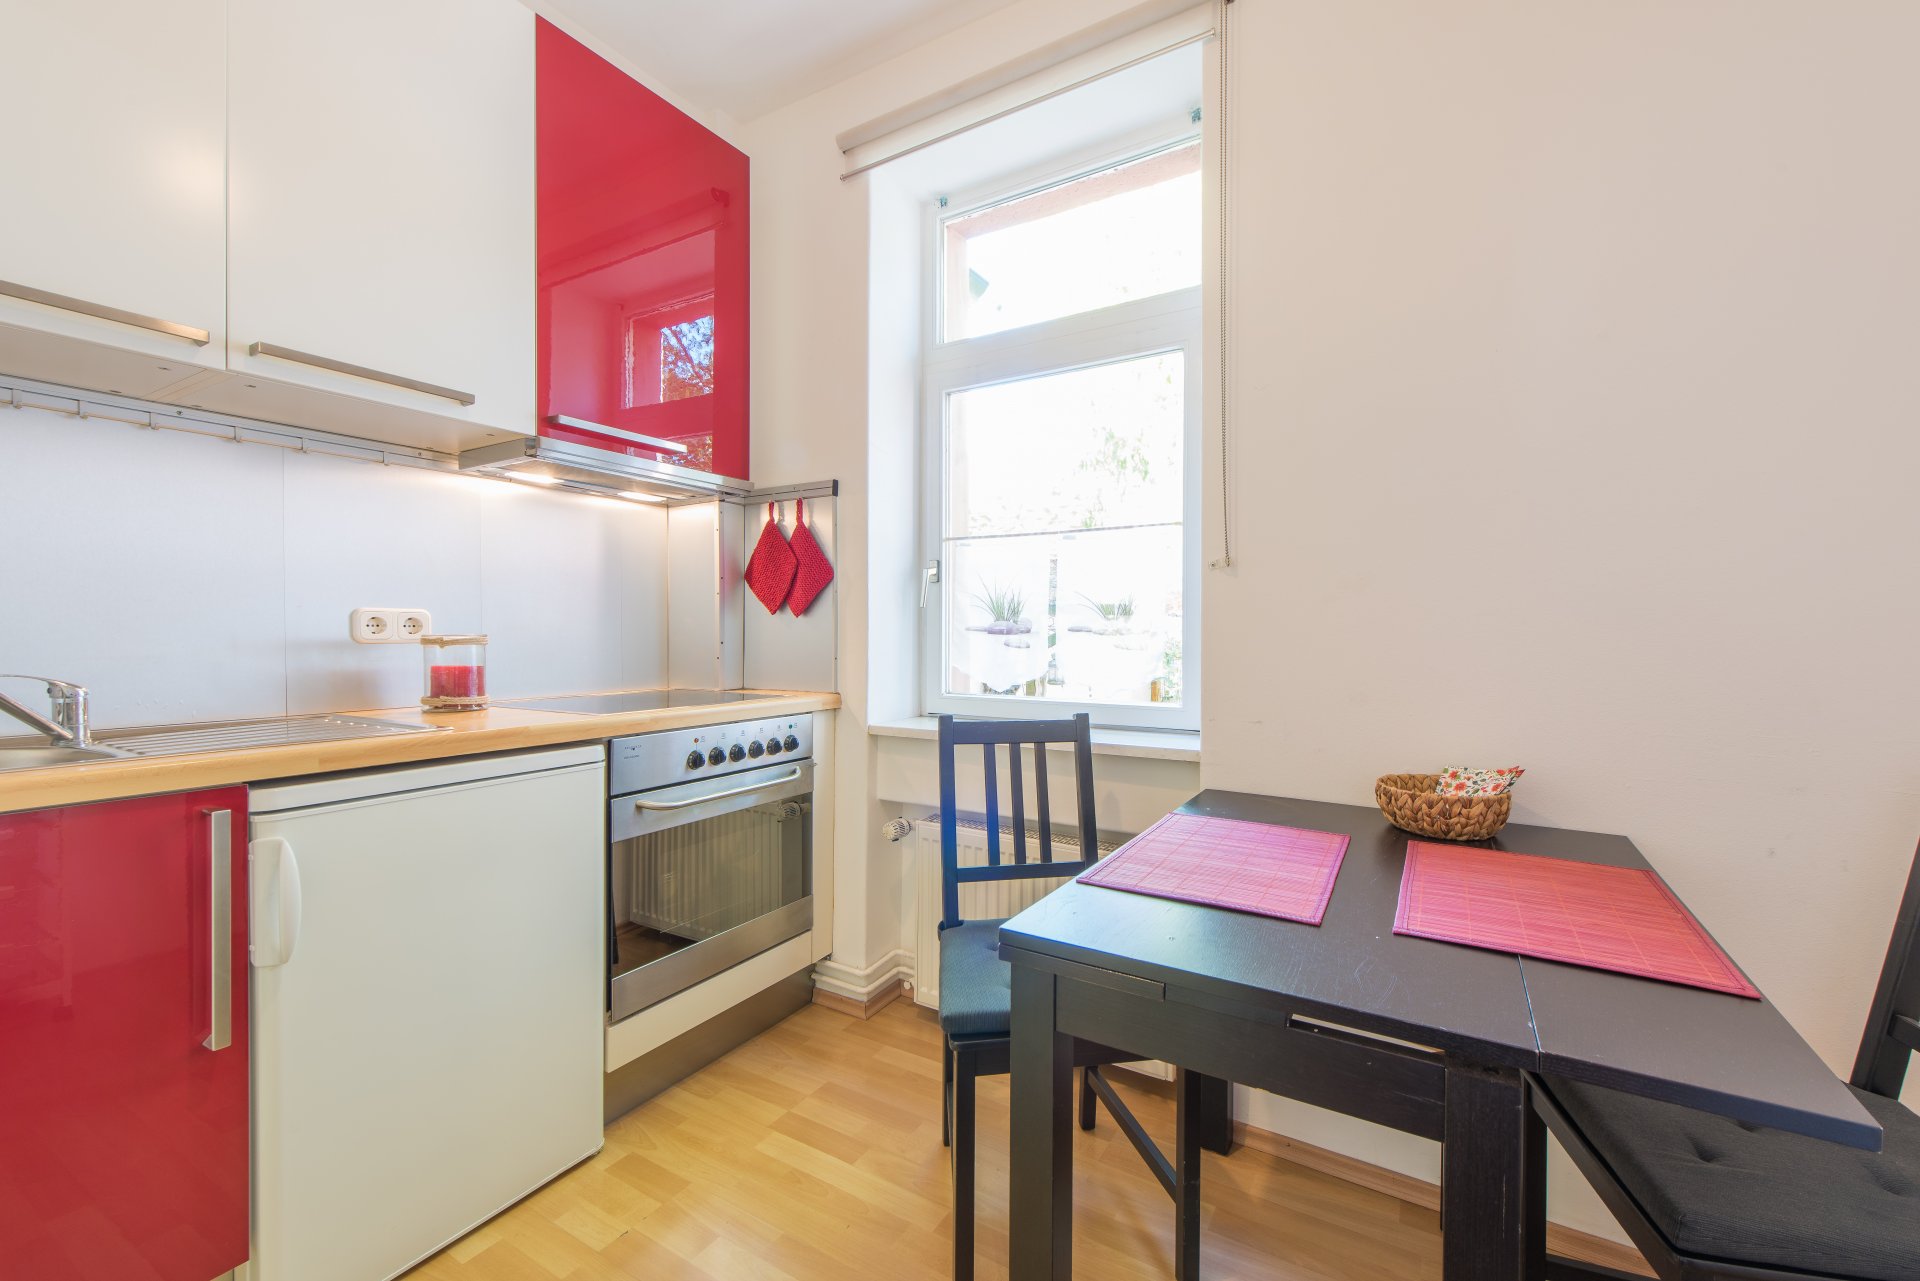 Einbauküche in der EG Wohnung ist inkl. - Oliver Reifferscheid - Immobilienmakler Darmstadt